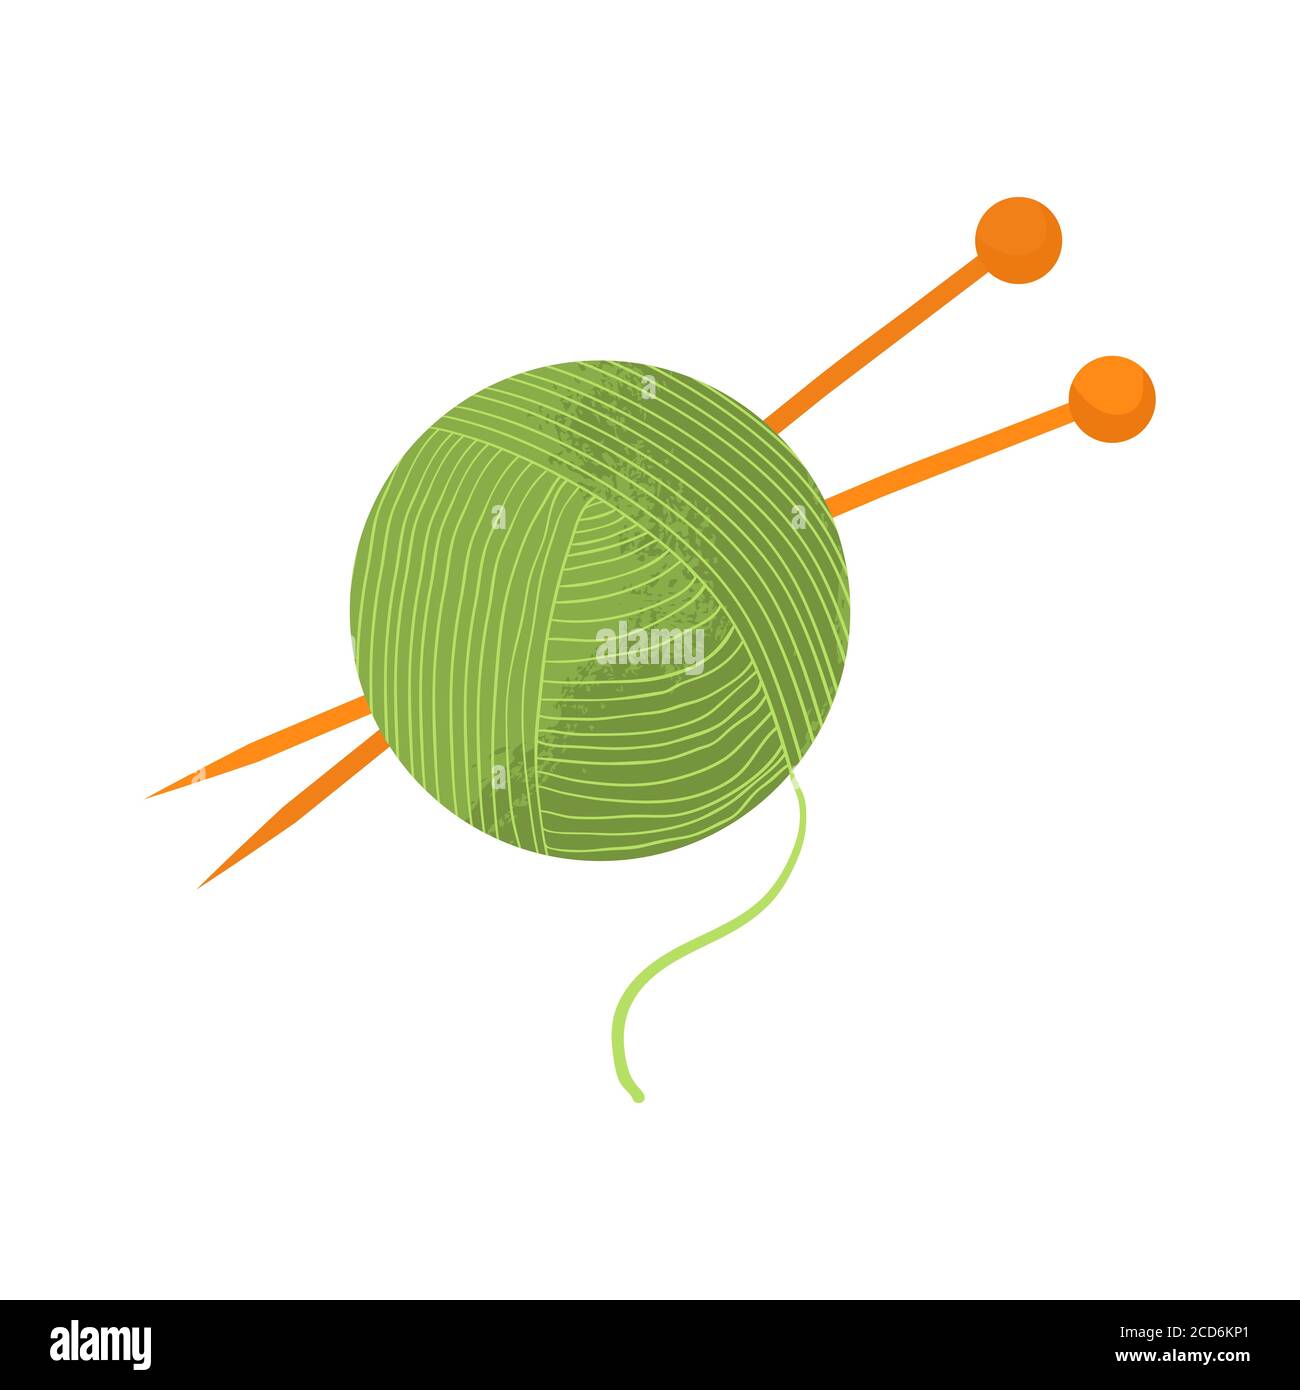 Ball aus grünem Garn mit orangefarbenen Stricknadeln. Vektorgrafik mit flachem Design und Textur, isoliert auf weißem Hintergrund. Cartoons-Stil. Stock Vektor